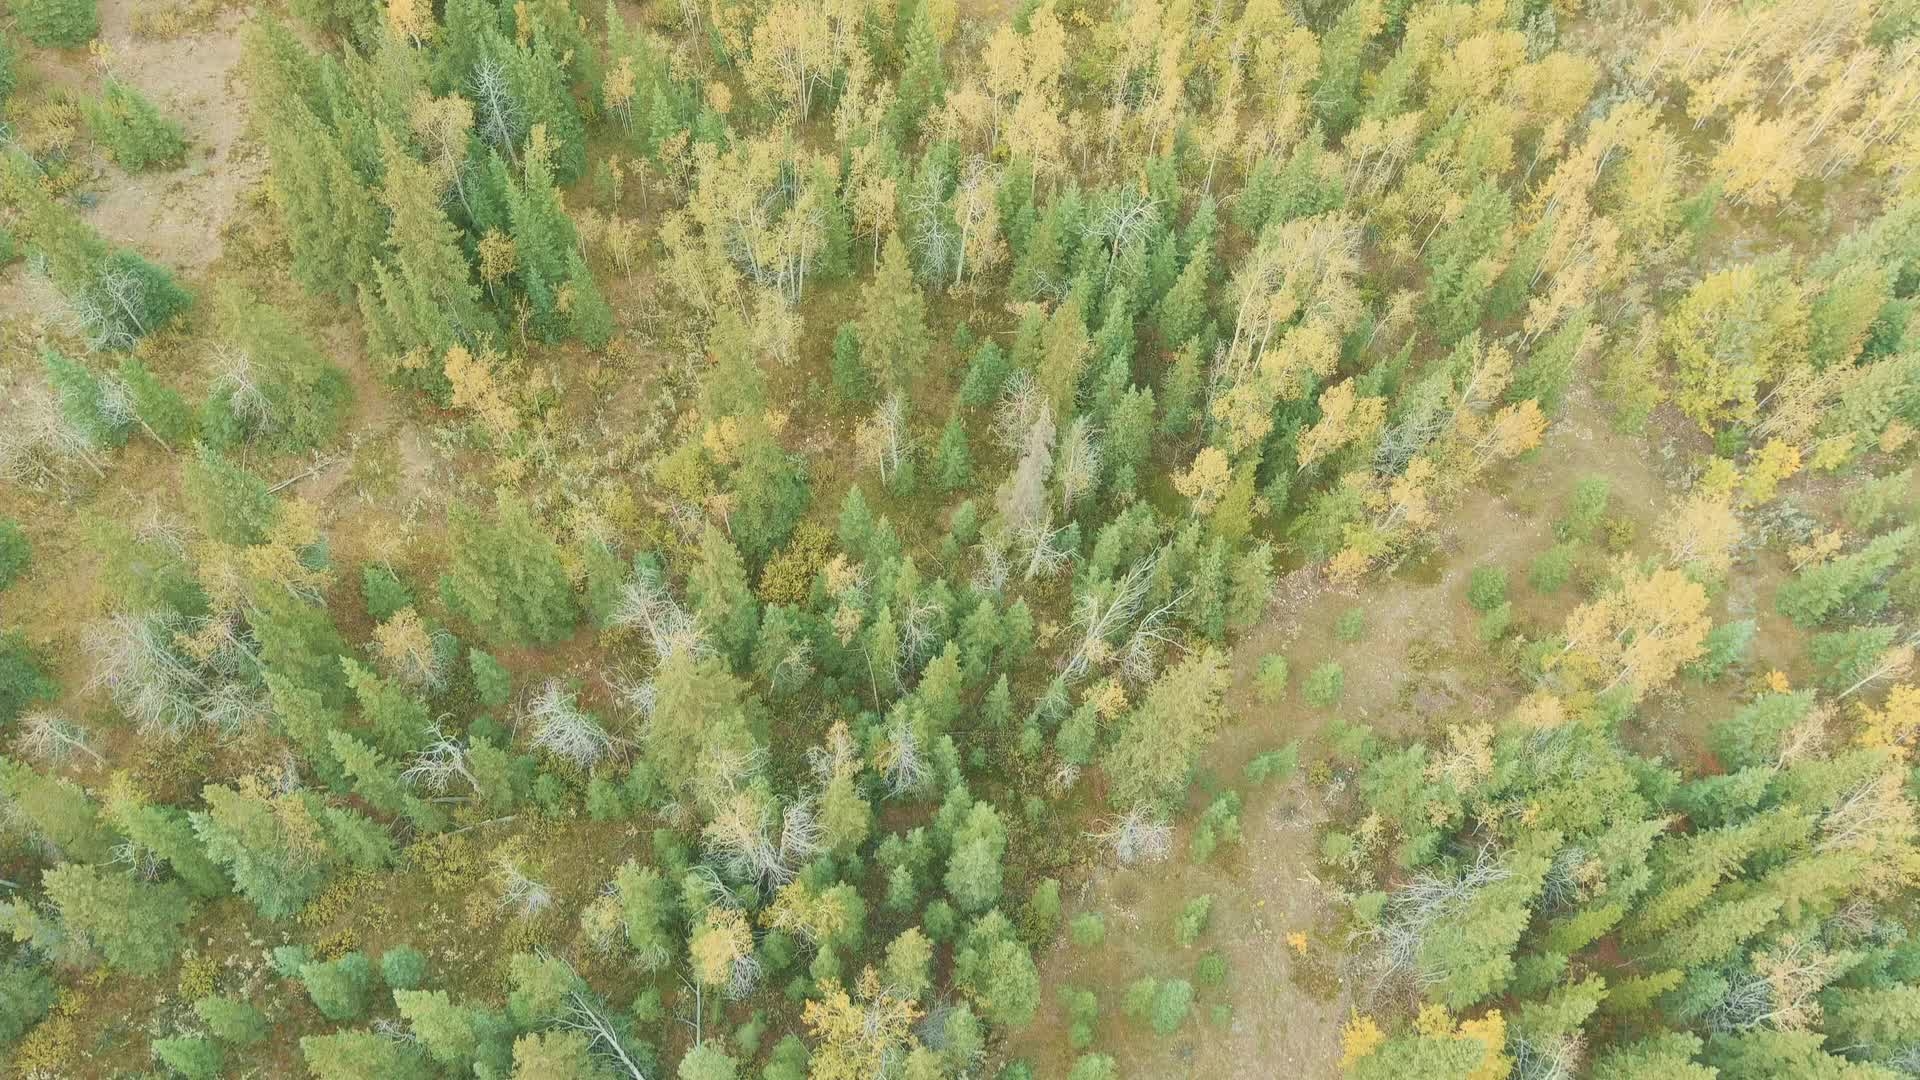 Canadian Rockies Fall Colors Aerial Video Aspens and Aqua